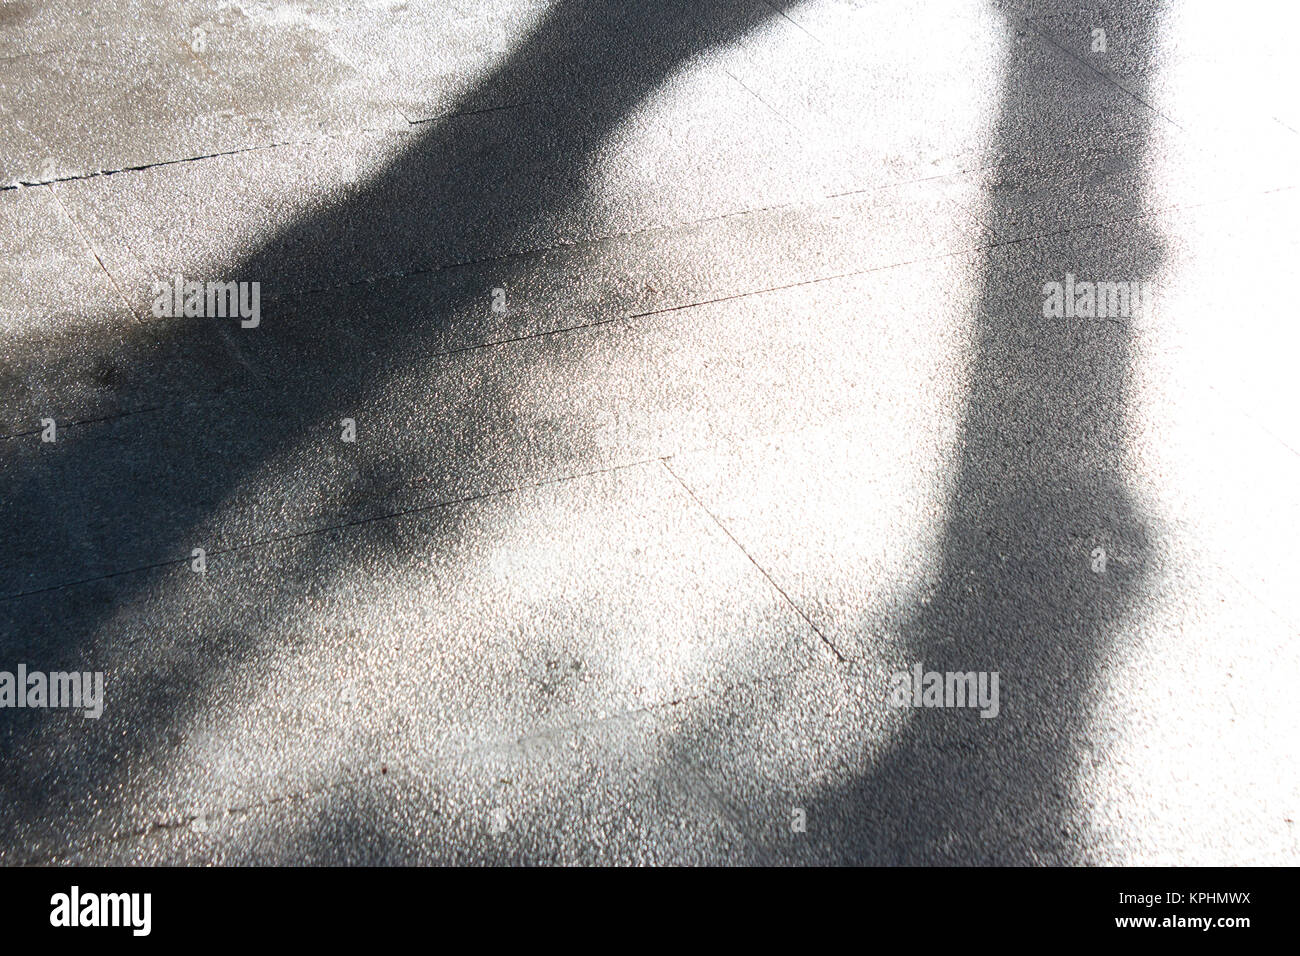 Invierno luminoso misty sombra de luz de un árbol en un parque brillante pavimento mojado Foto de stock